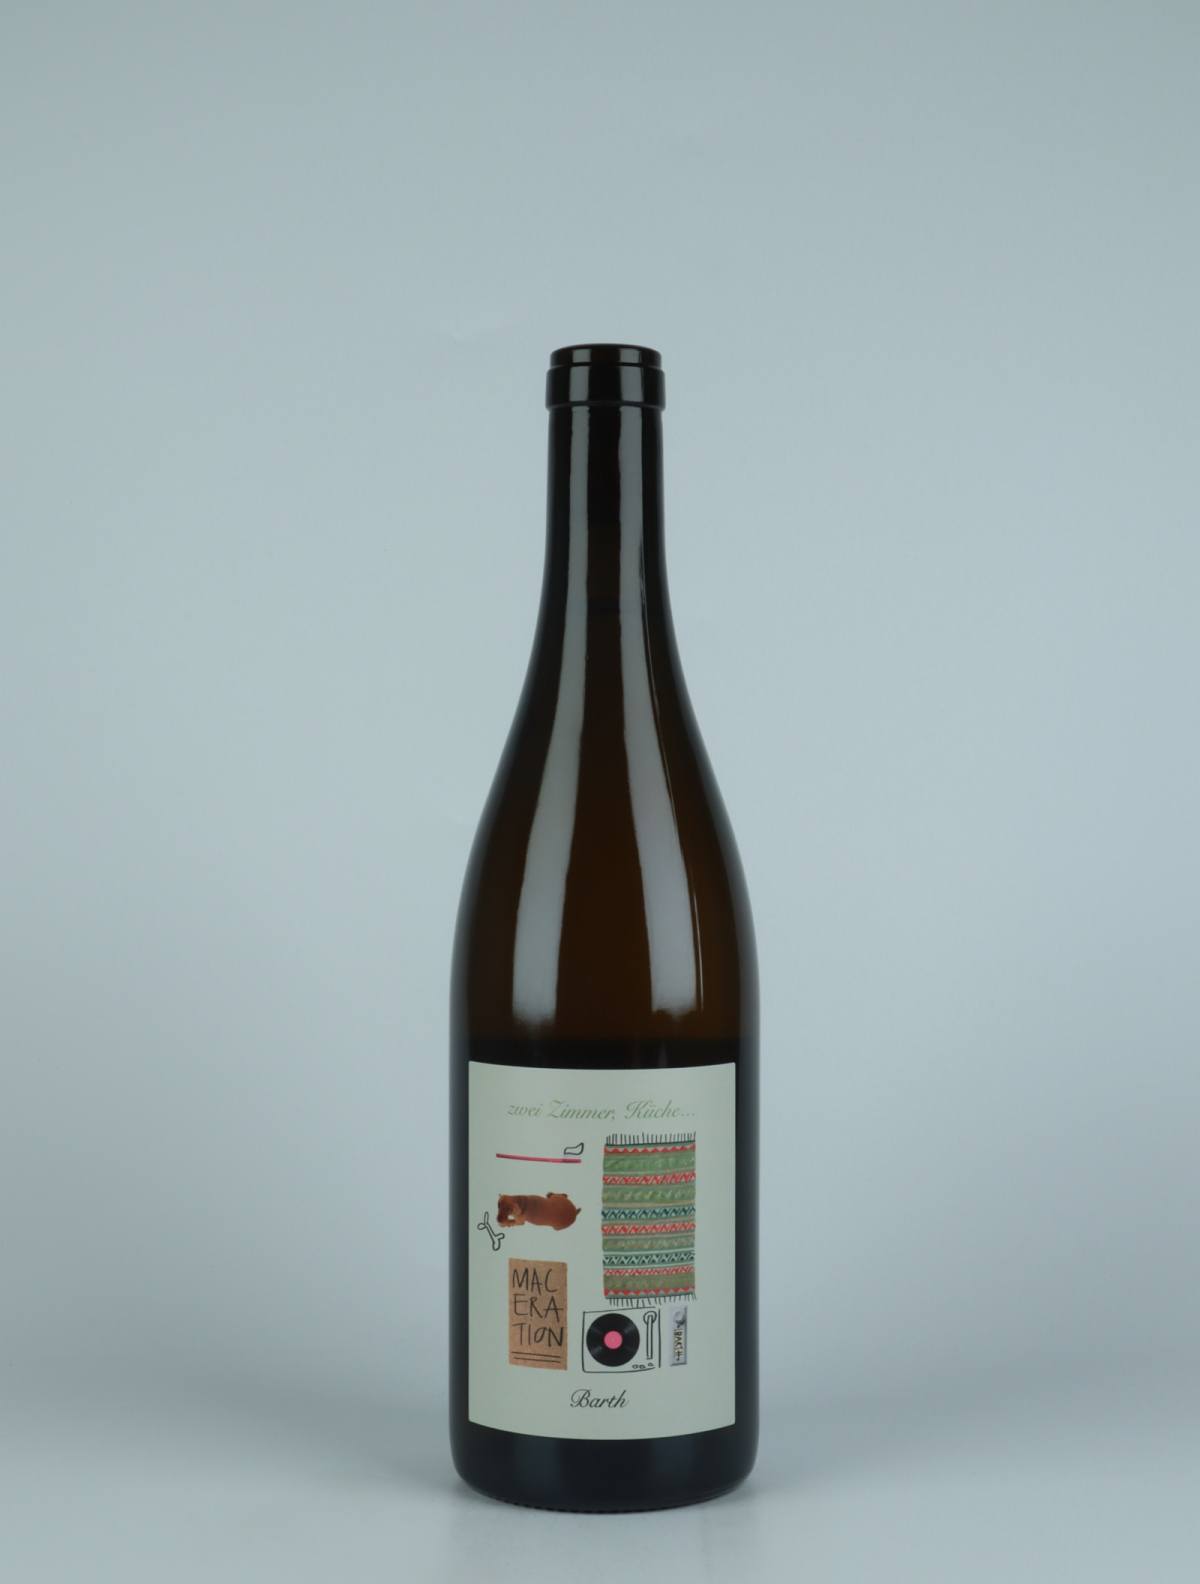 A bottle N.V. Zwei Zimmer, Küche, Barth - Maceration #2 Orange wine from Christopher Barth, Rheinhessen in Germany